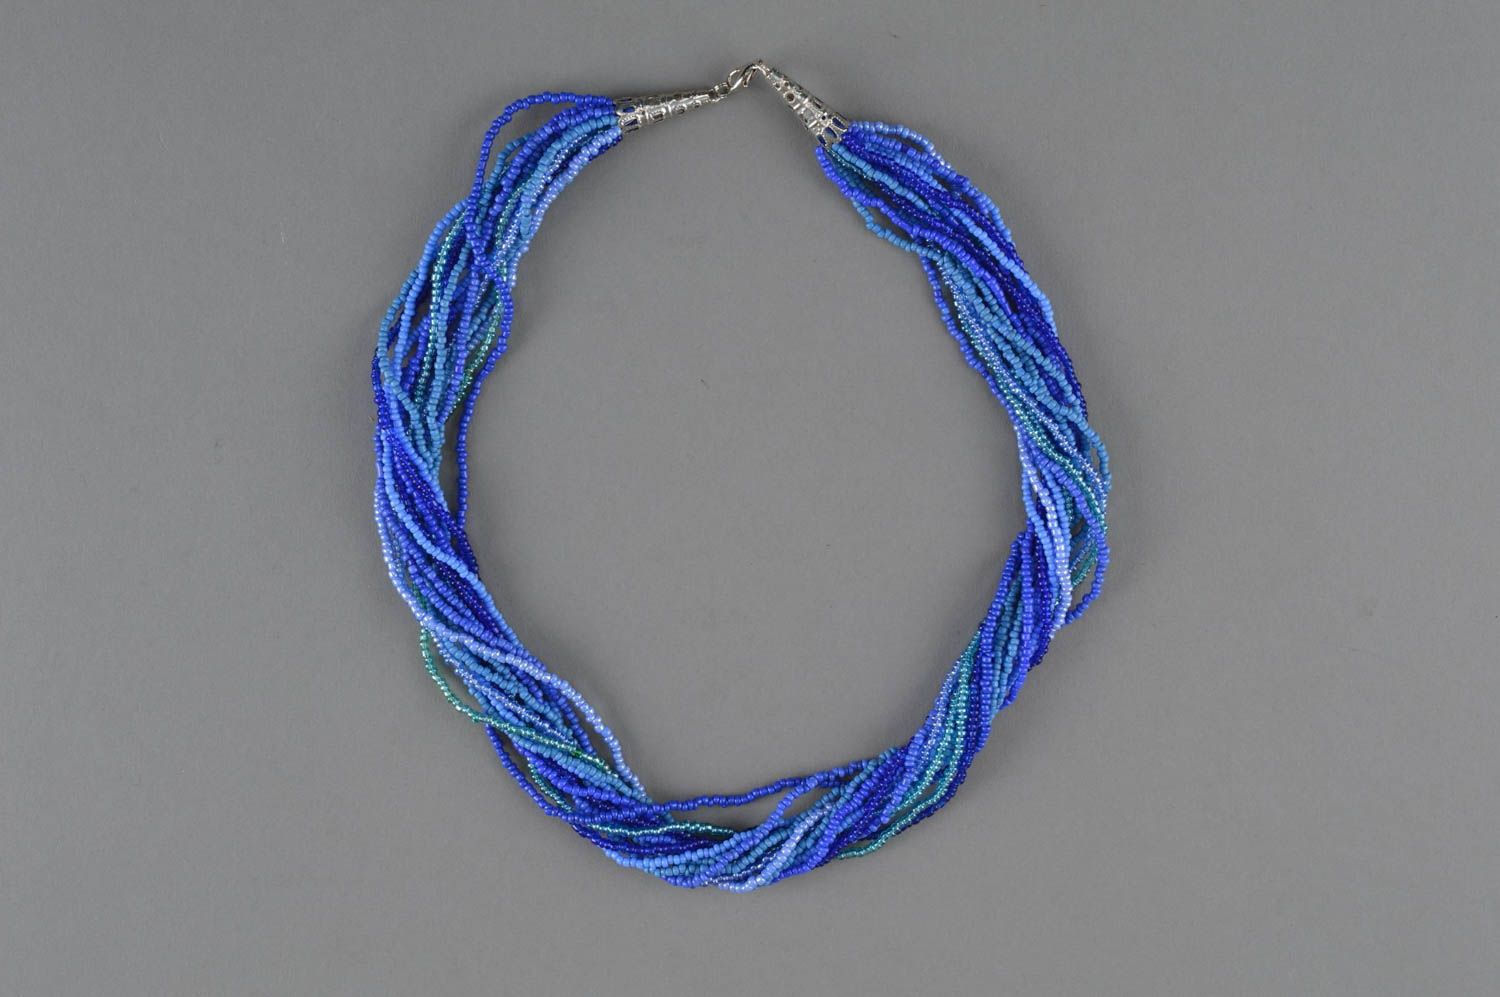 Ожерелье из бисера многорядное синее с голубым оригинальное ручной работы Волны фото 2